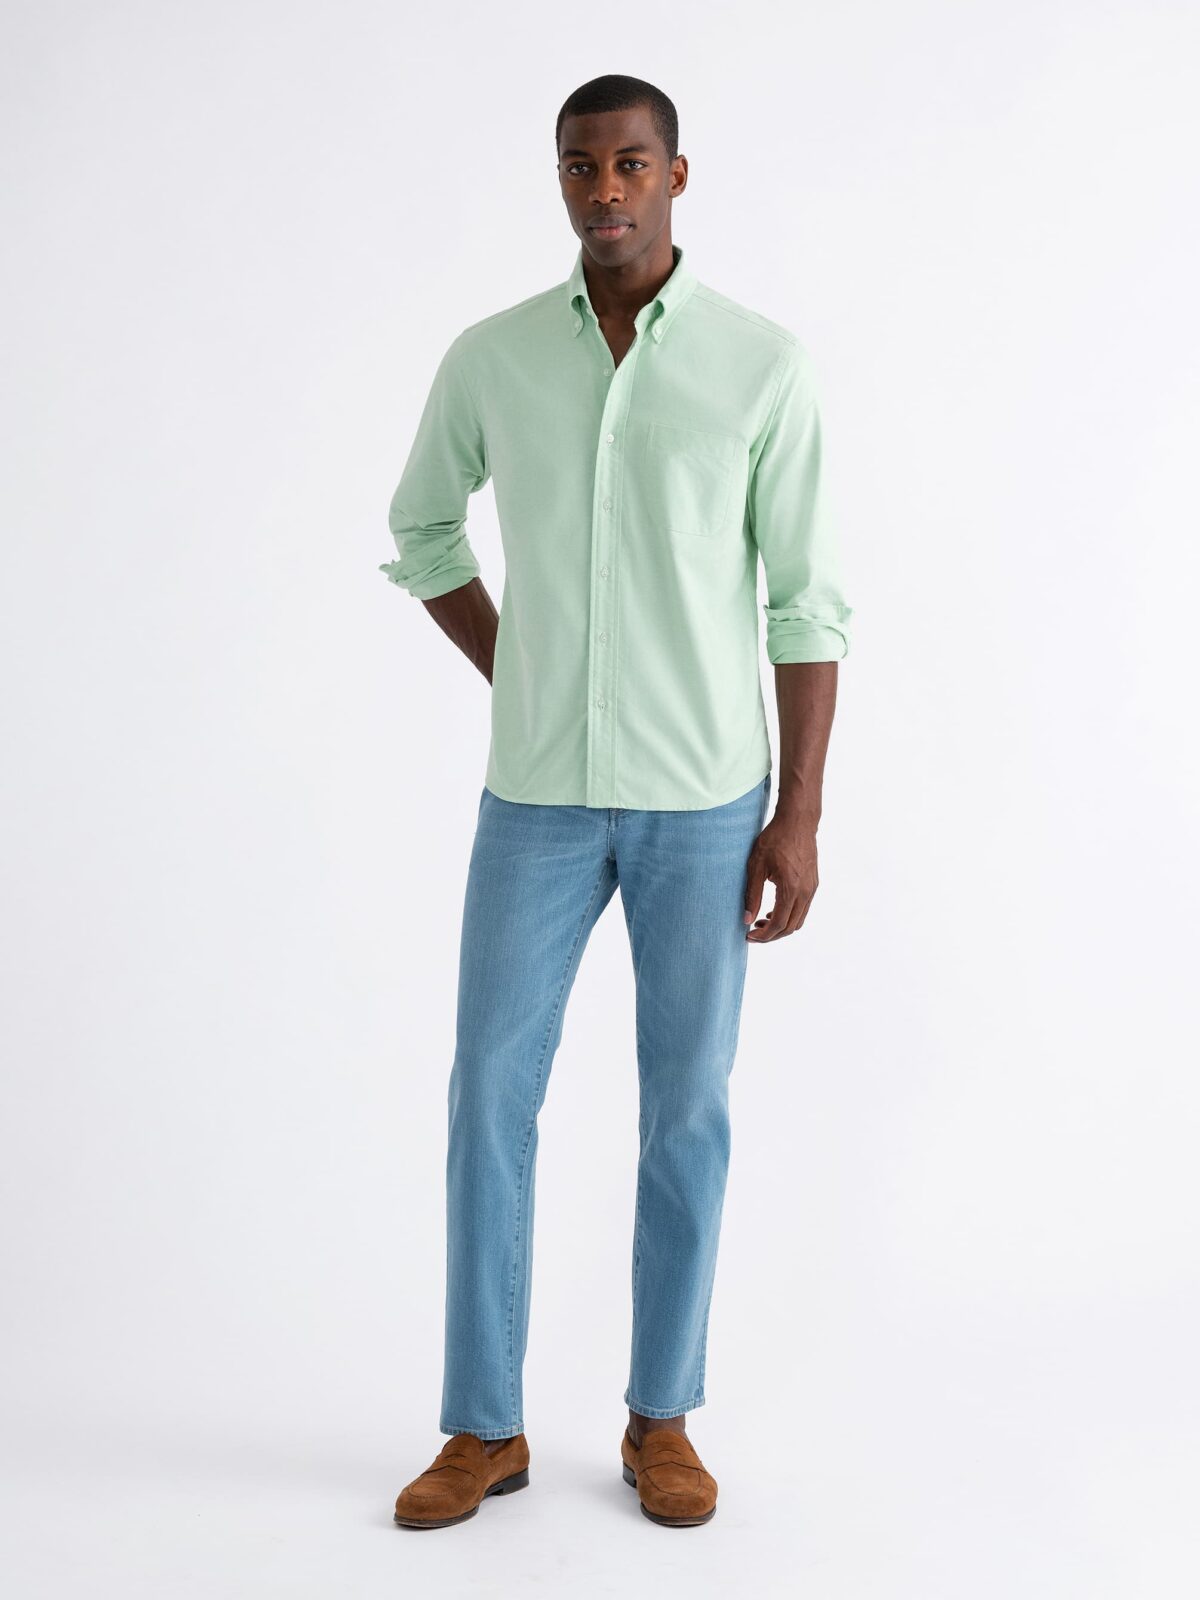 Slim Fit Premium Cotton Shirt - Light blue/striped - Men | H&M US